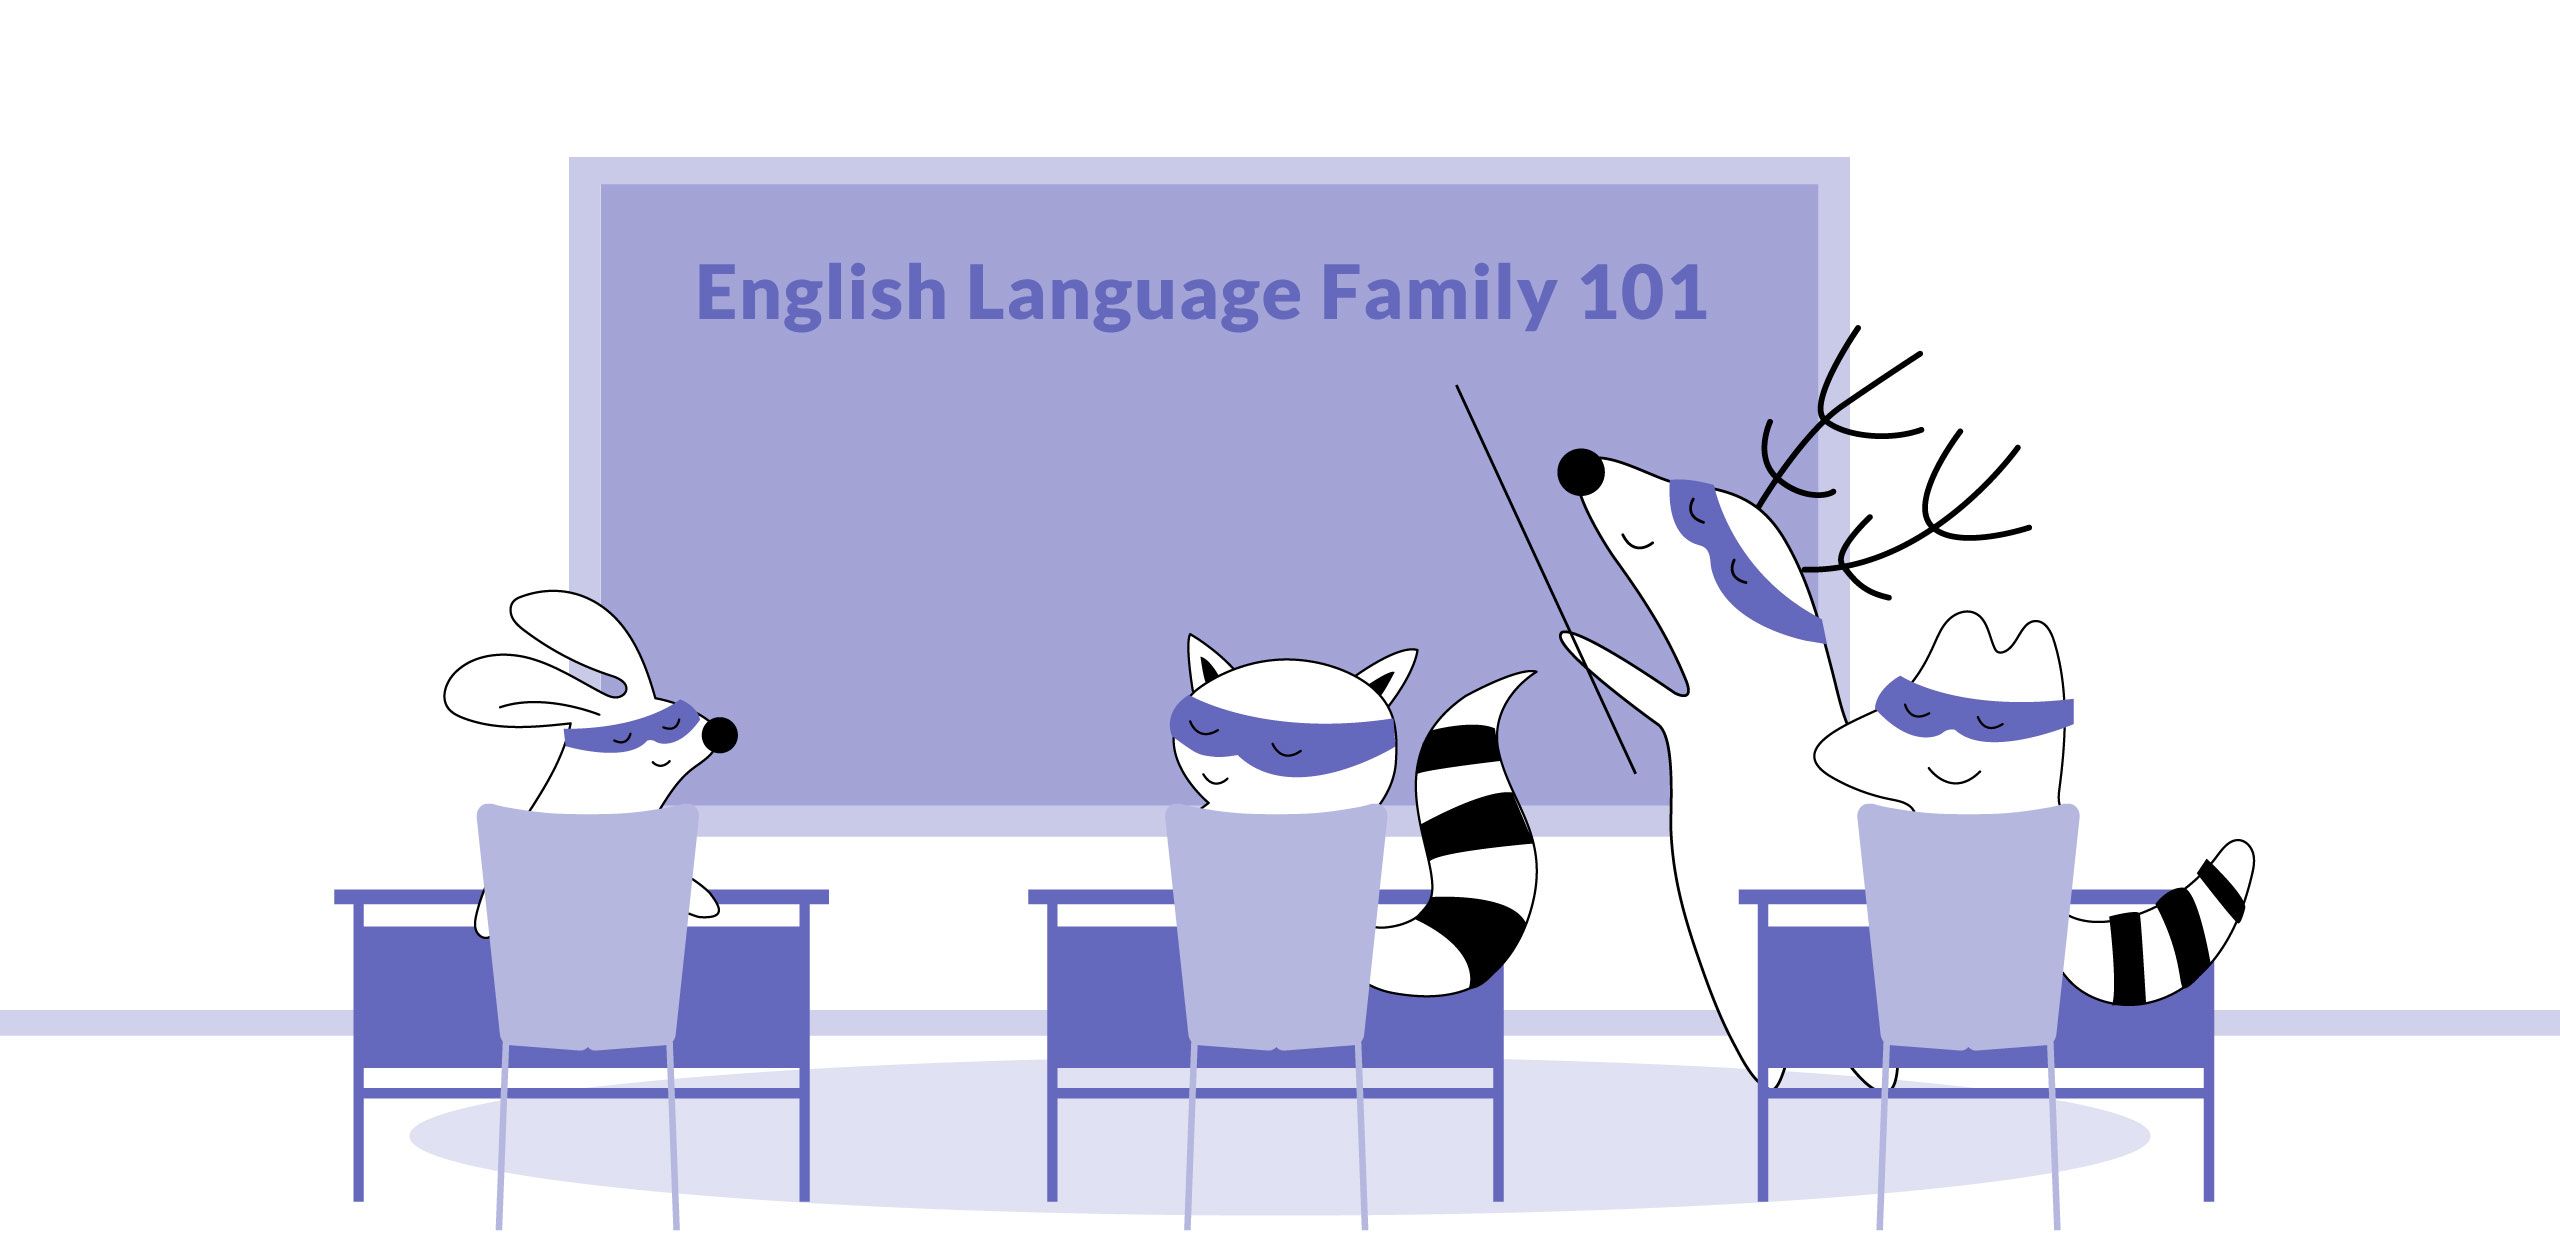 English language family